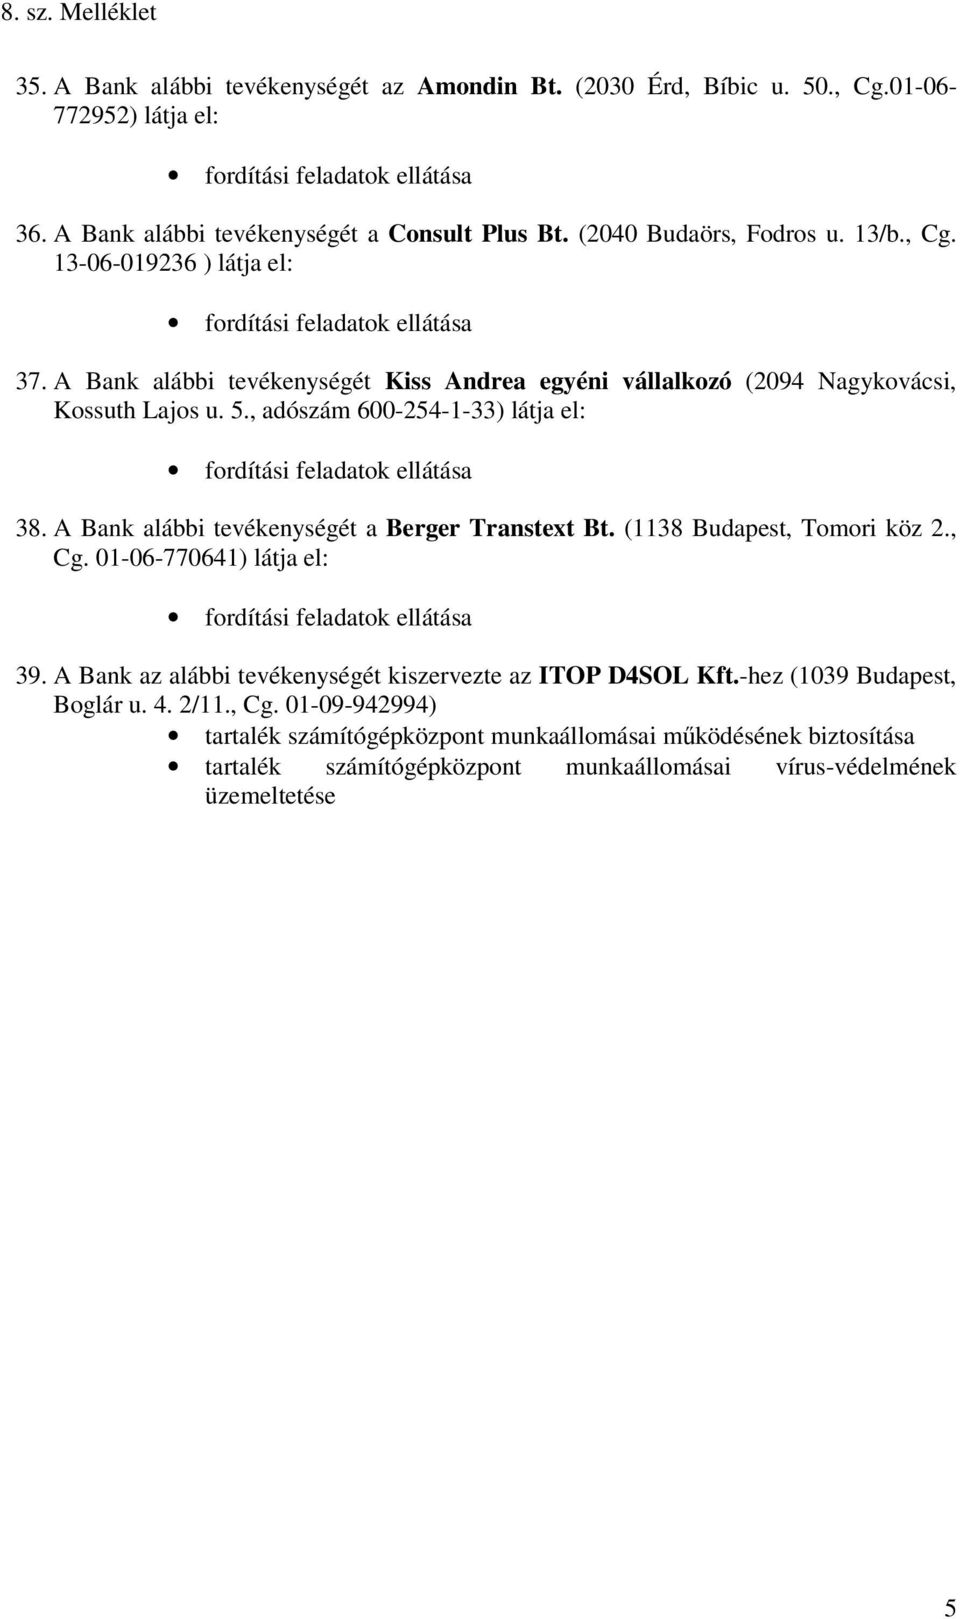 A Bank alábbi tevékenységét a Berger Transtext Bt. (1138 Budapest, Tomori köz 2., Cg. 01-06-770641) látja el: 39. A Bank az alábbi tevékenységét kiszervezte az ITOP D4SOL Kft.